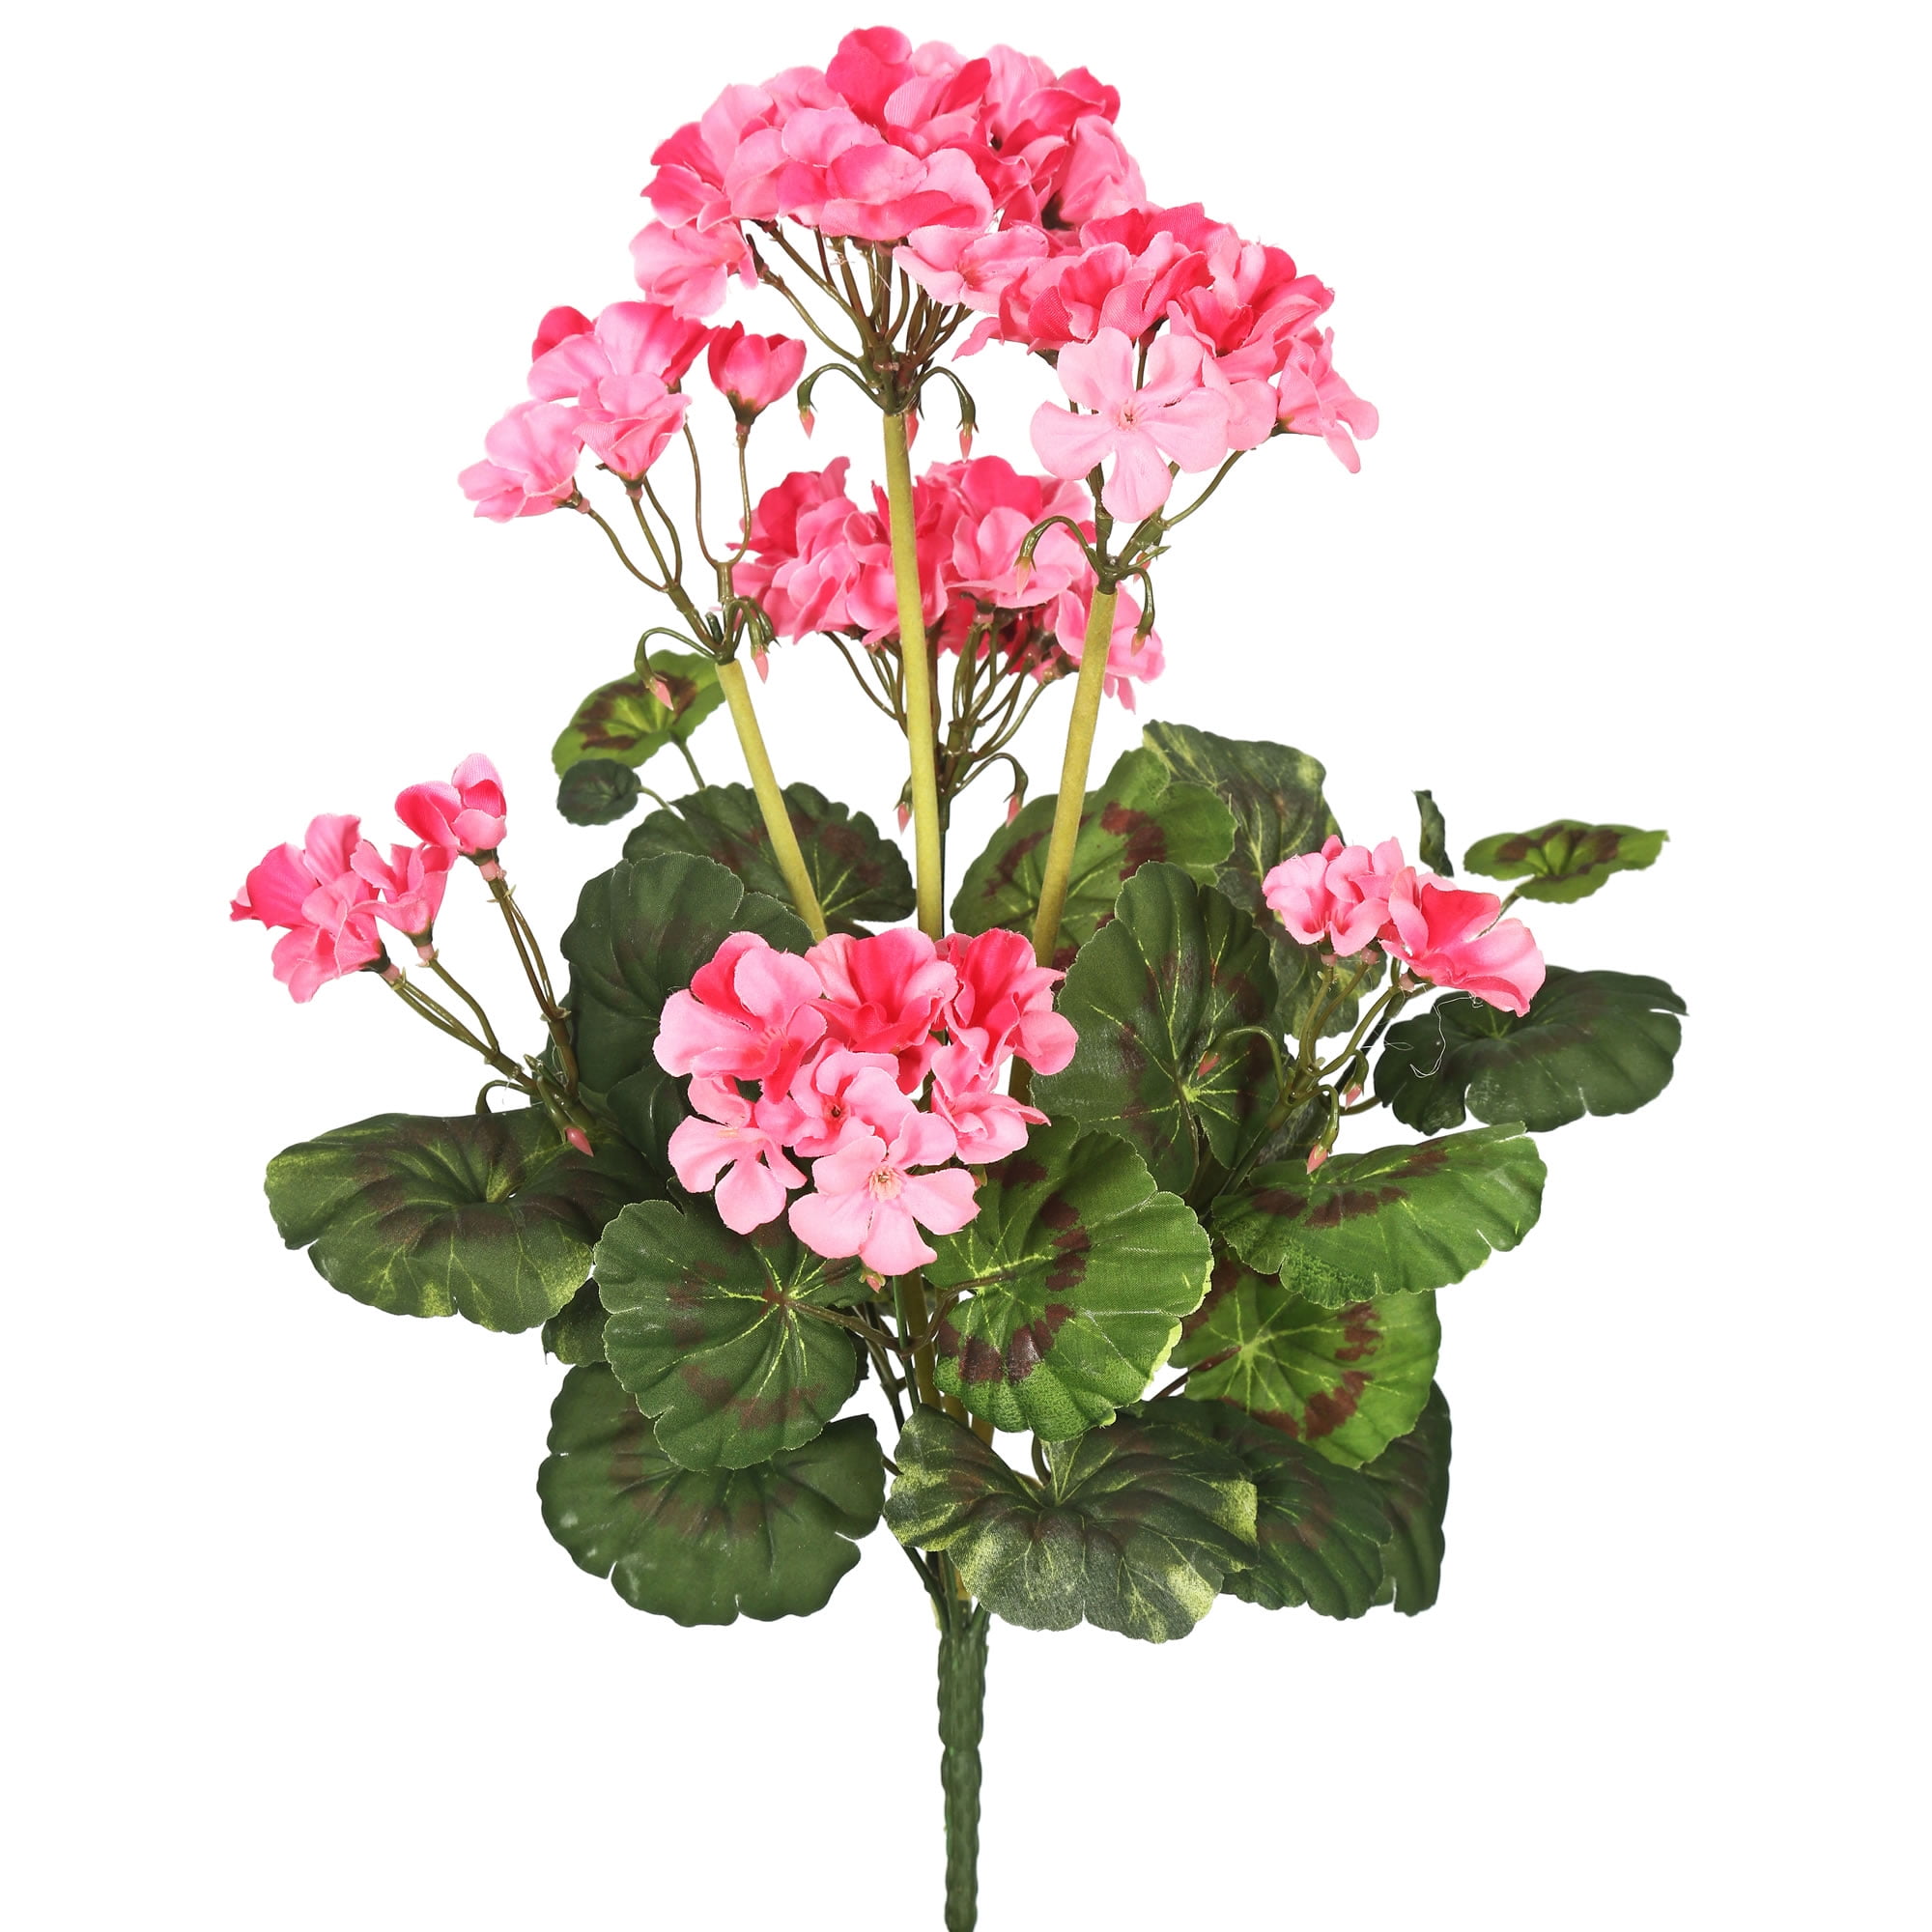 Set of 4 Artificial 13" Geranium Flowers Plant Bunches for Making Arrangements 